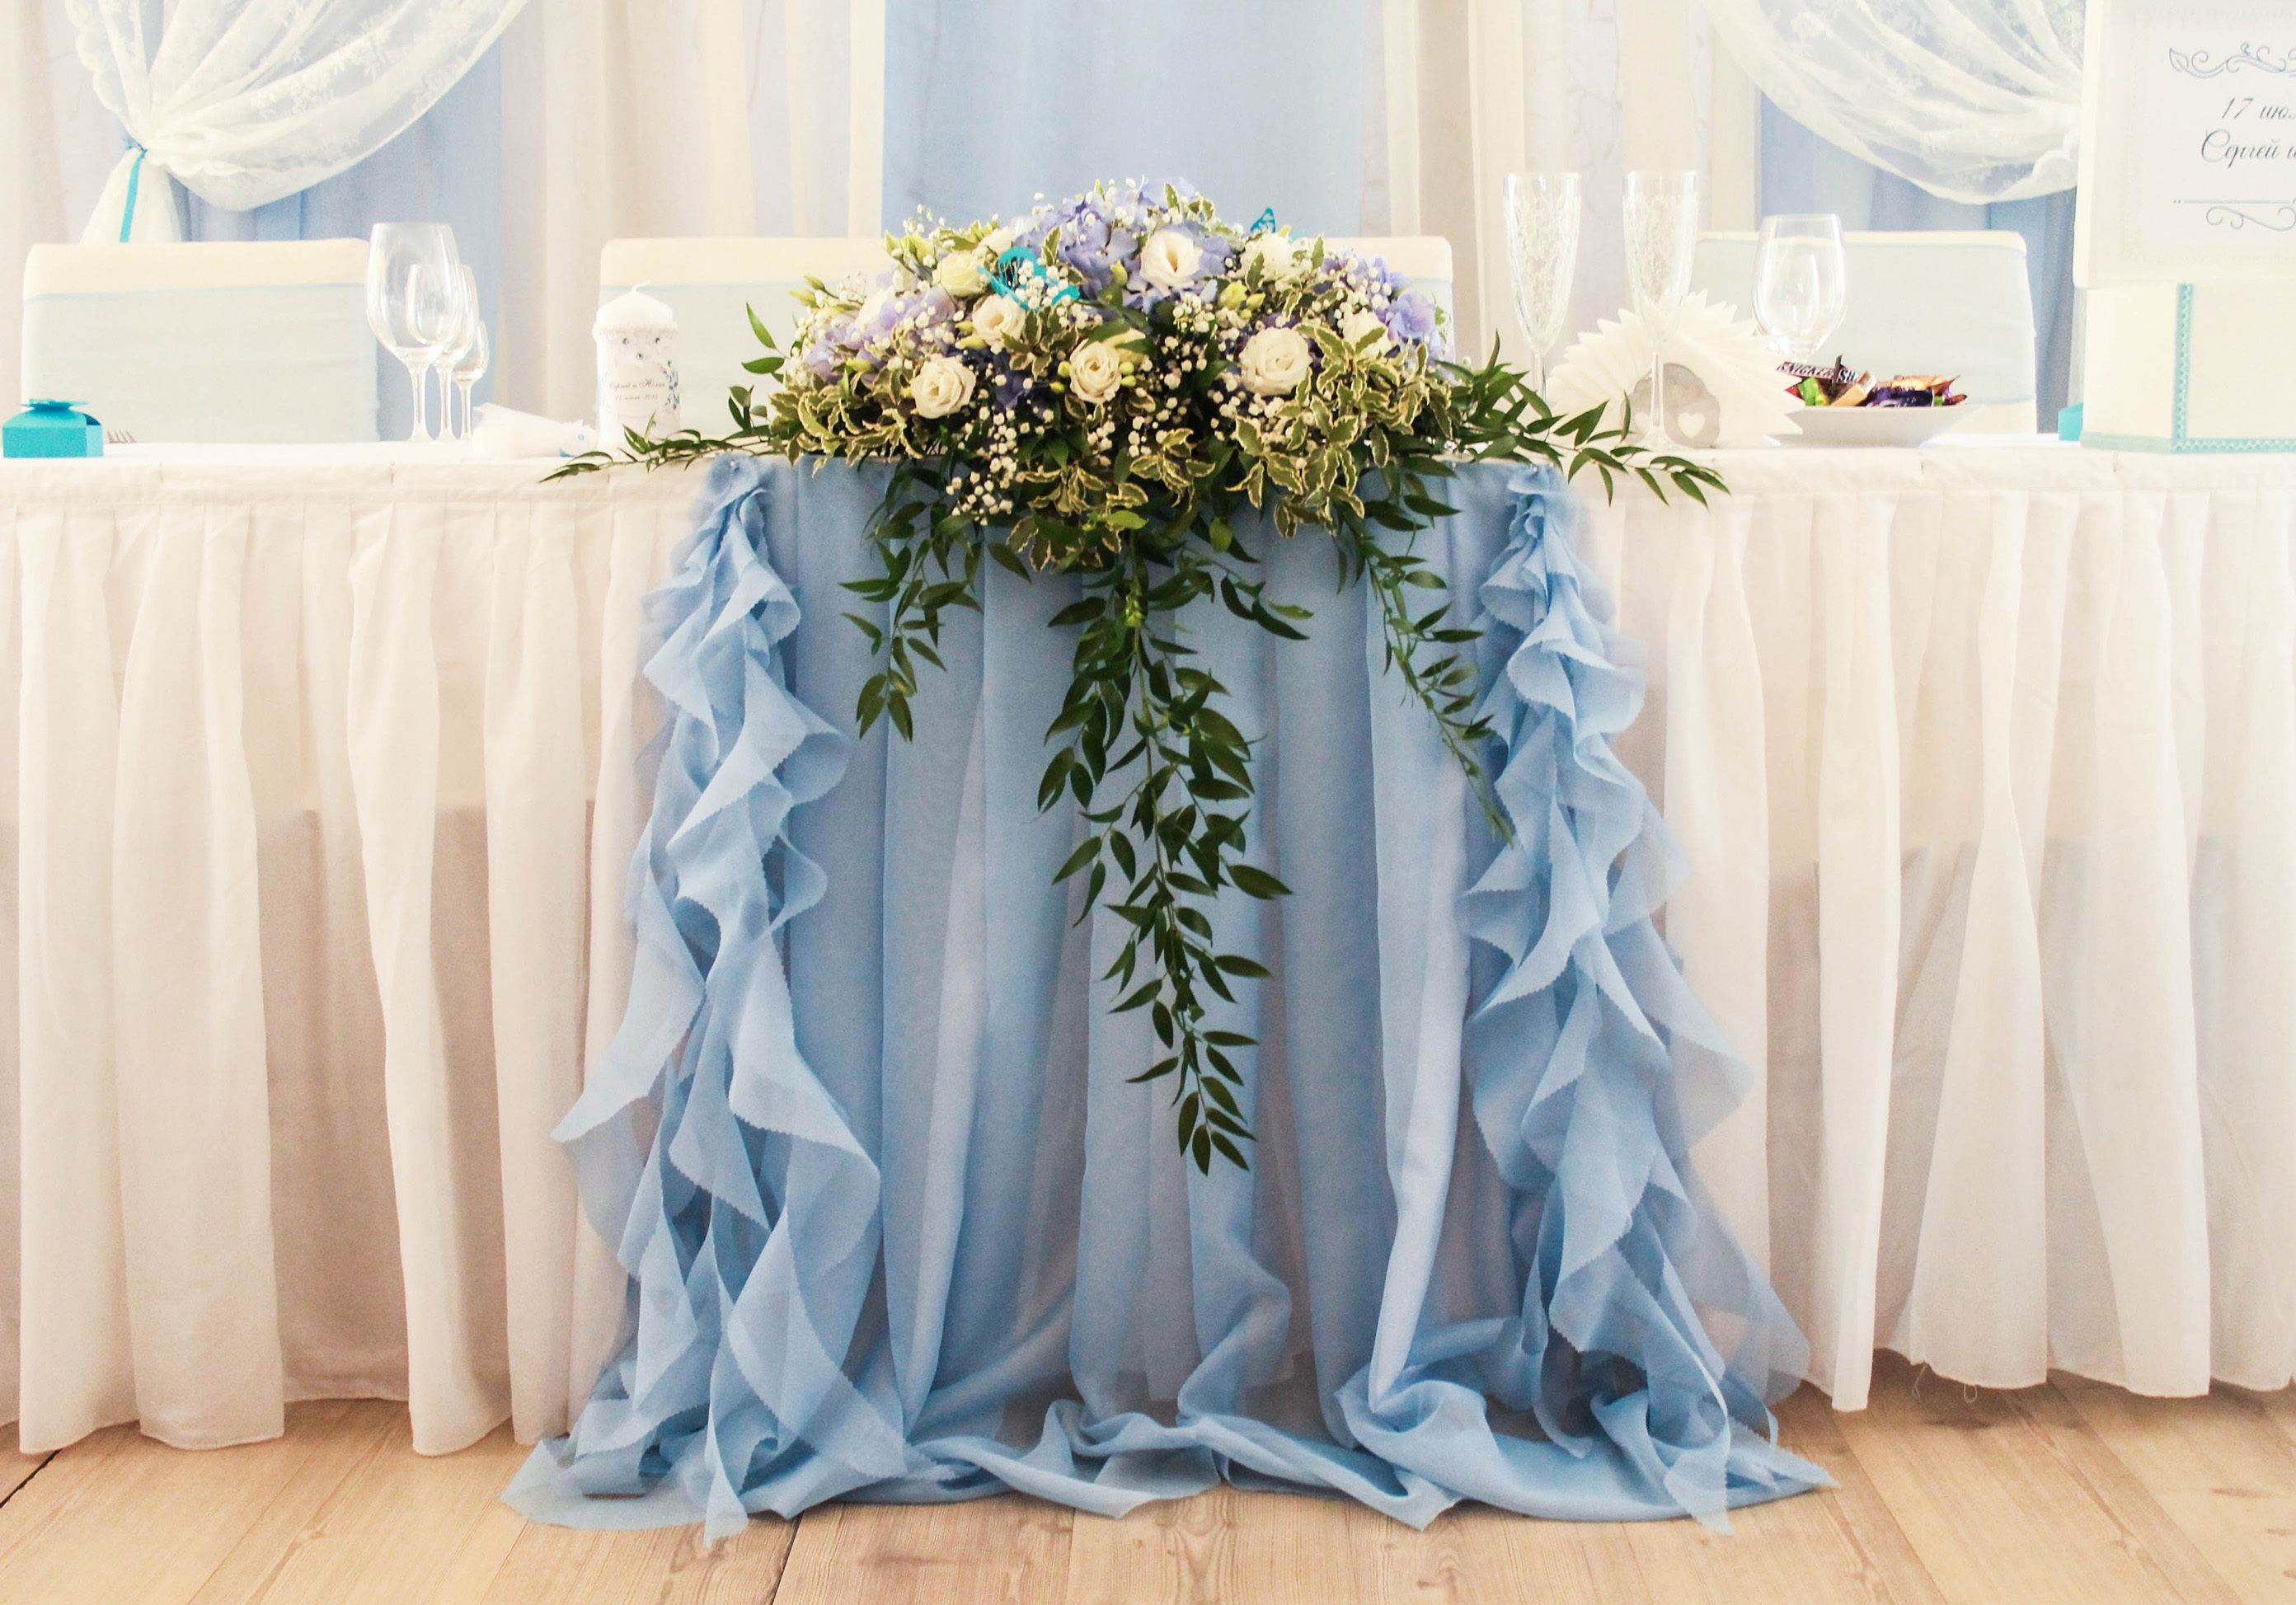 стол жениха и невесты в голубом цвете